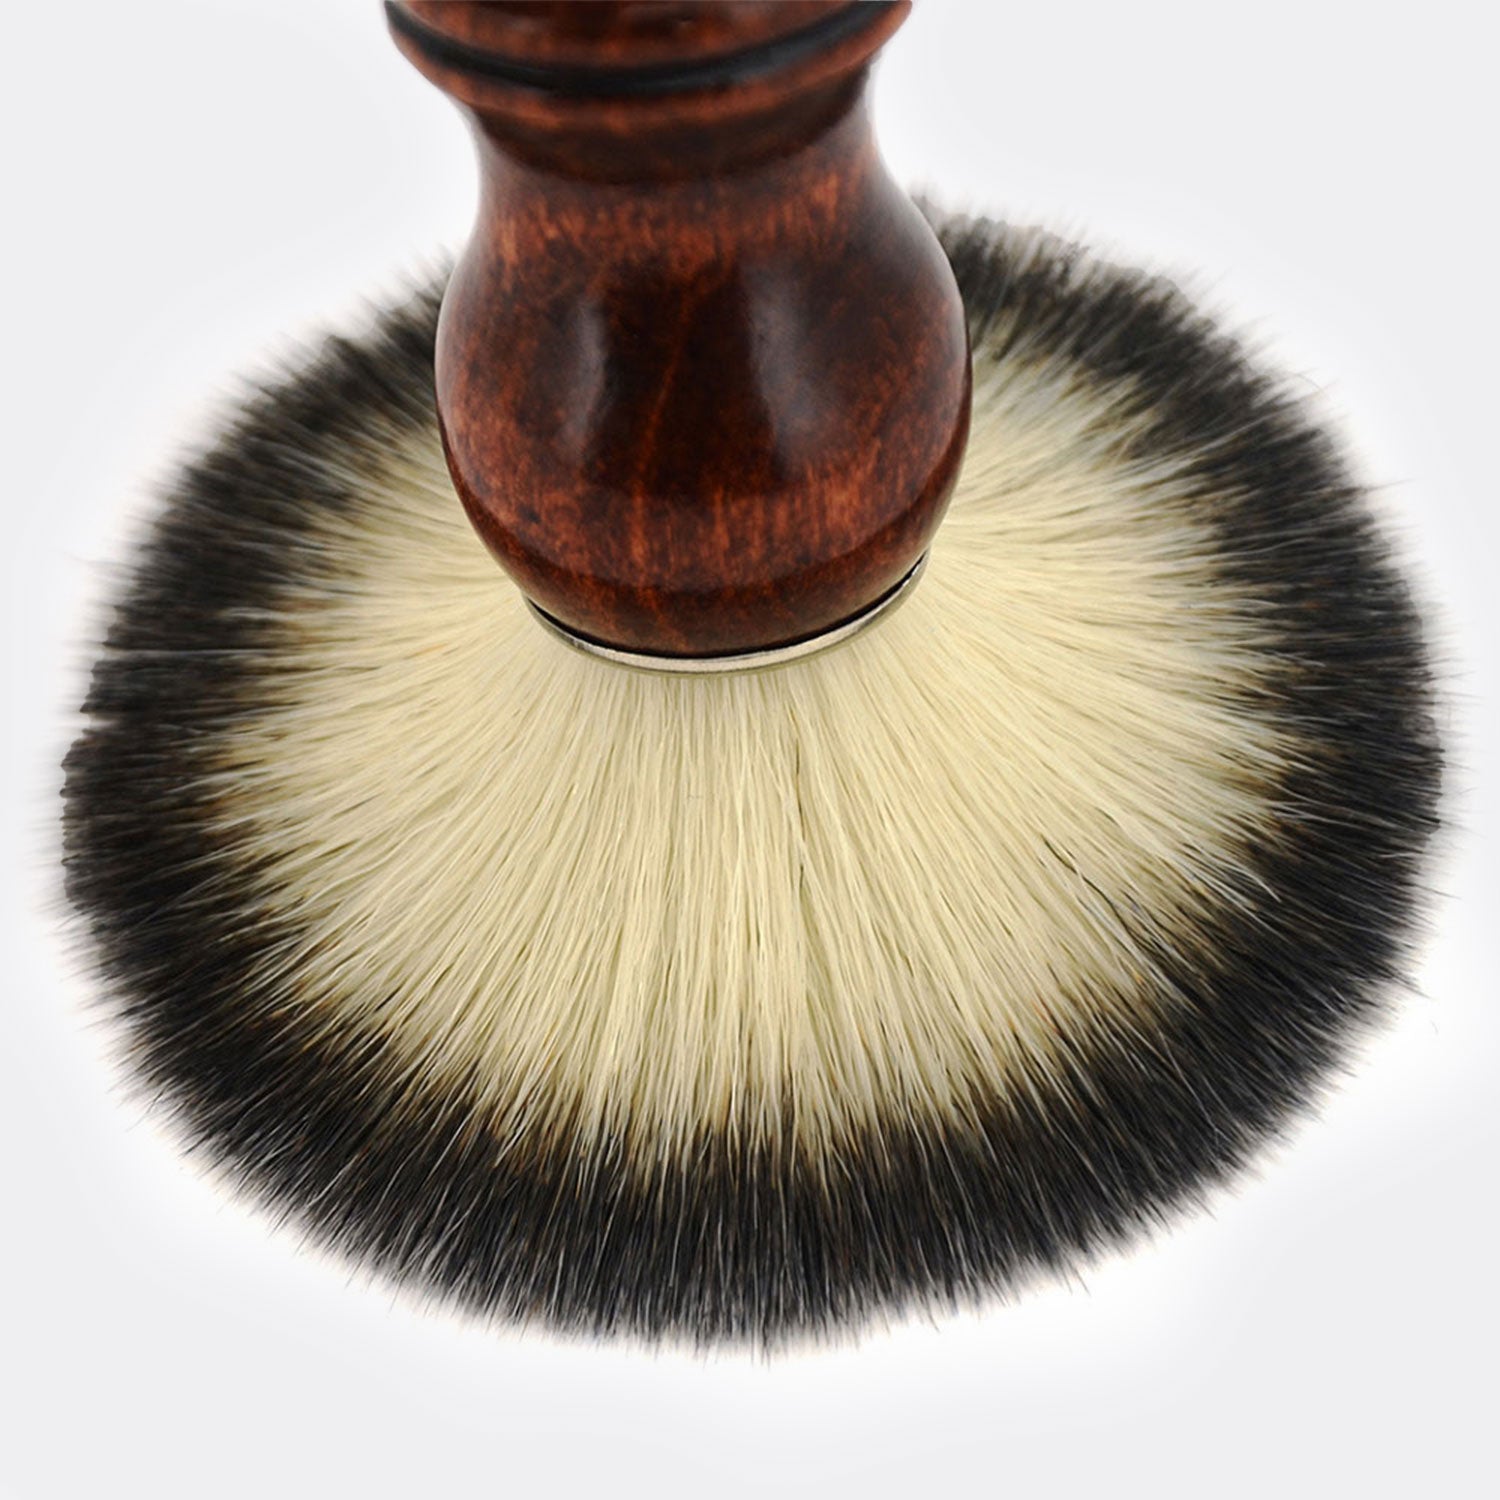 Medium Wood Synthetic Shaving Brush